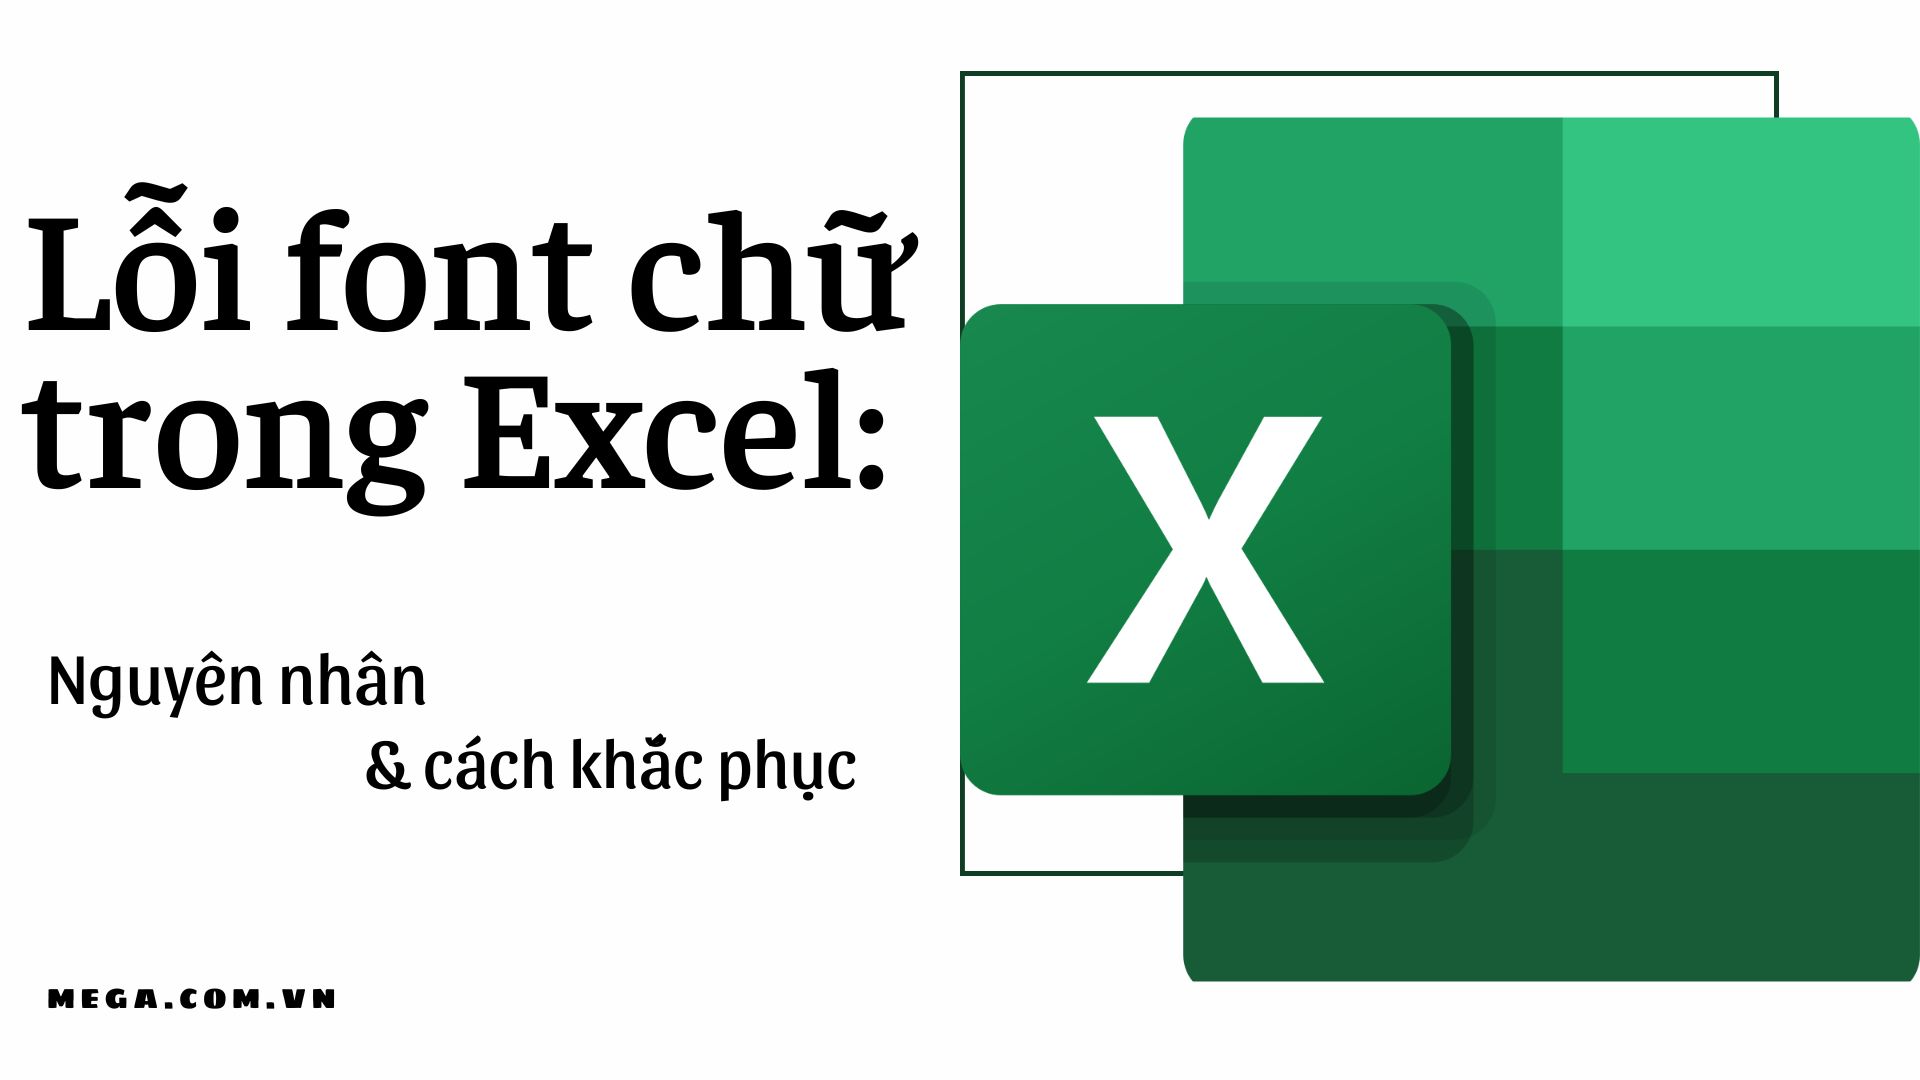 Nguyên nhân và cách khắc phục lỗi font chữ Excel: Excel 2024 giúp bạn giải quyết vấn đề của nguyên nhân và cách khắc phục lỗi font chữ. Excel 2024 không chỉ cung cấp cho bạn những khóa học về lỗi font chữ, mà còn cung cấp cho bạn những giải pháp sửa lỗi font chữ tự động. Đăng ký ngay hôm nay để cùng trải nghiệm những đột phá của Excel 2024.